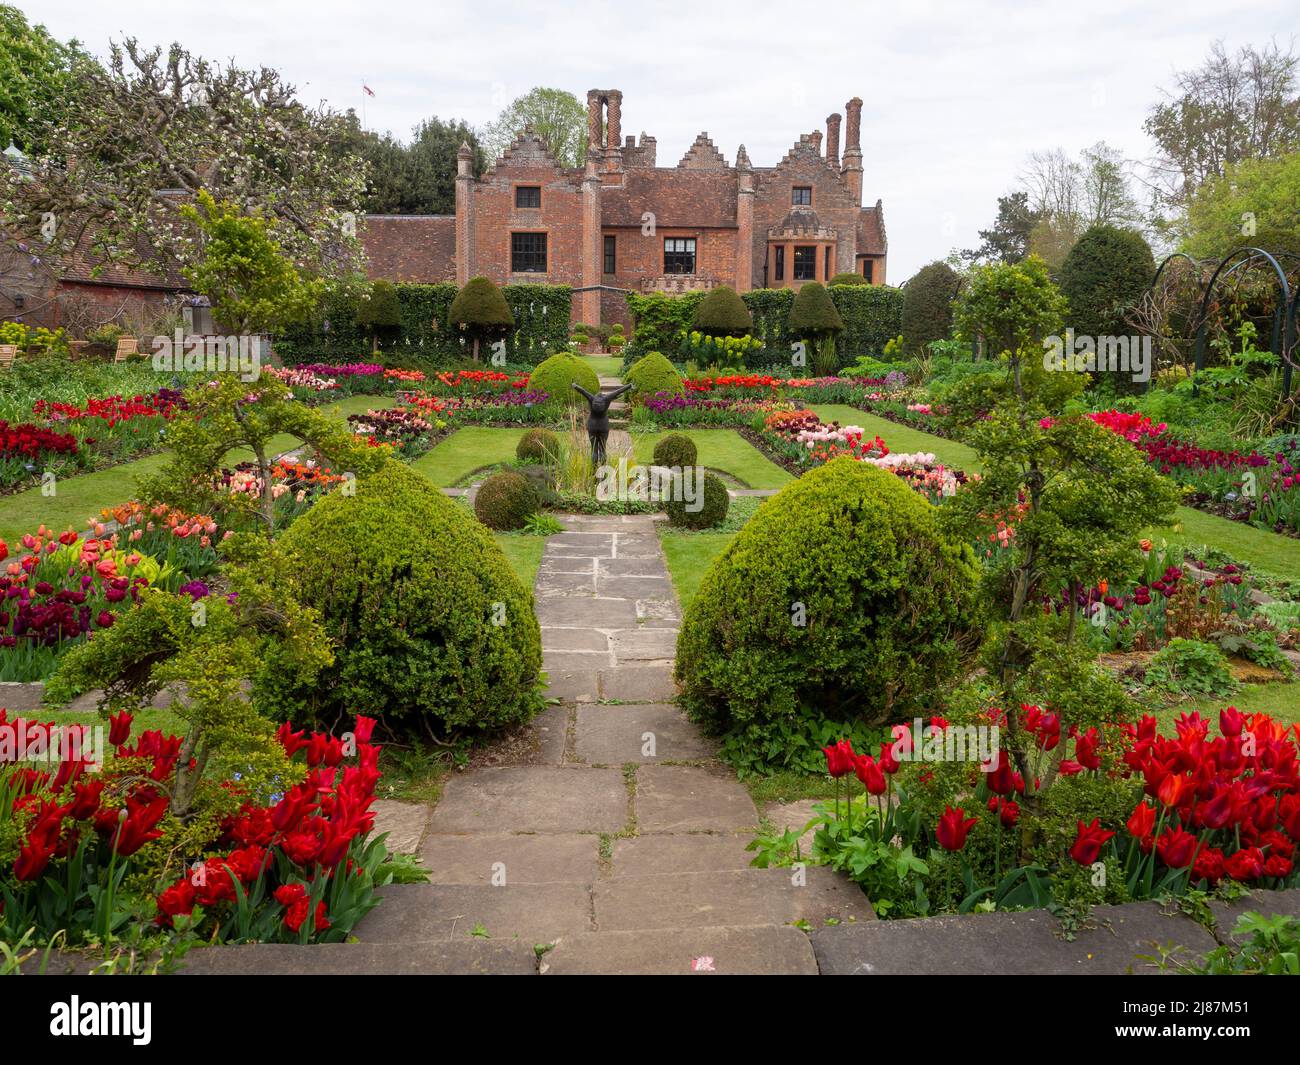 Chenies Manor Garden.Blick auf das Tudor Manor vom schönen versunkenen Garten mit vielen Tulpenarten in voller Blüte. Rot, pastellrosa, lila Blüten. Stockfoto